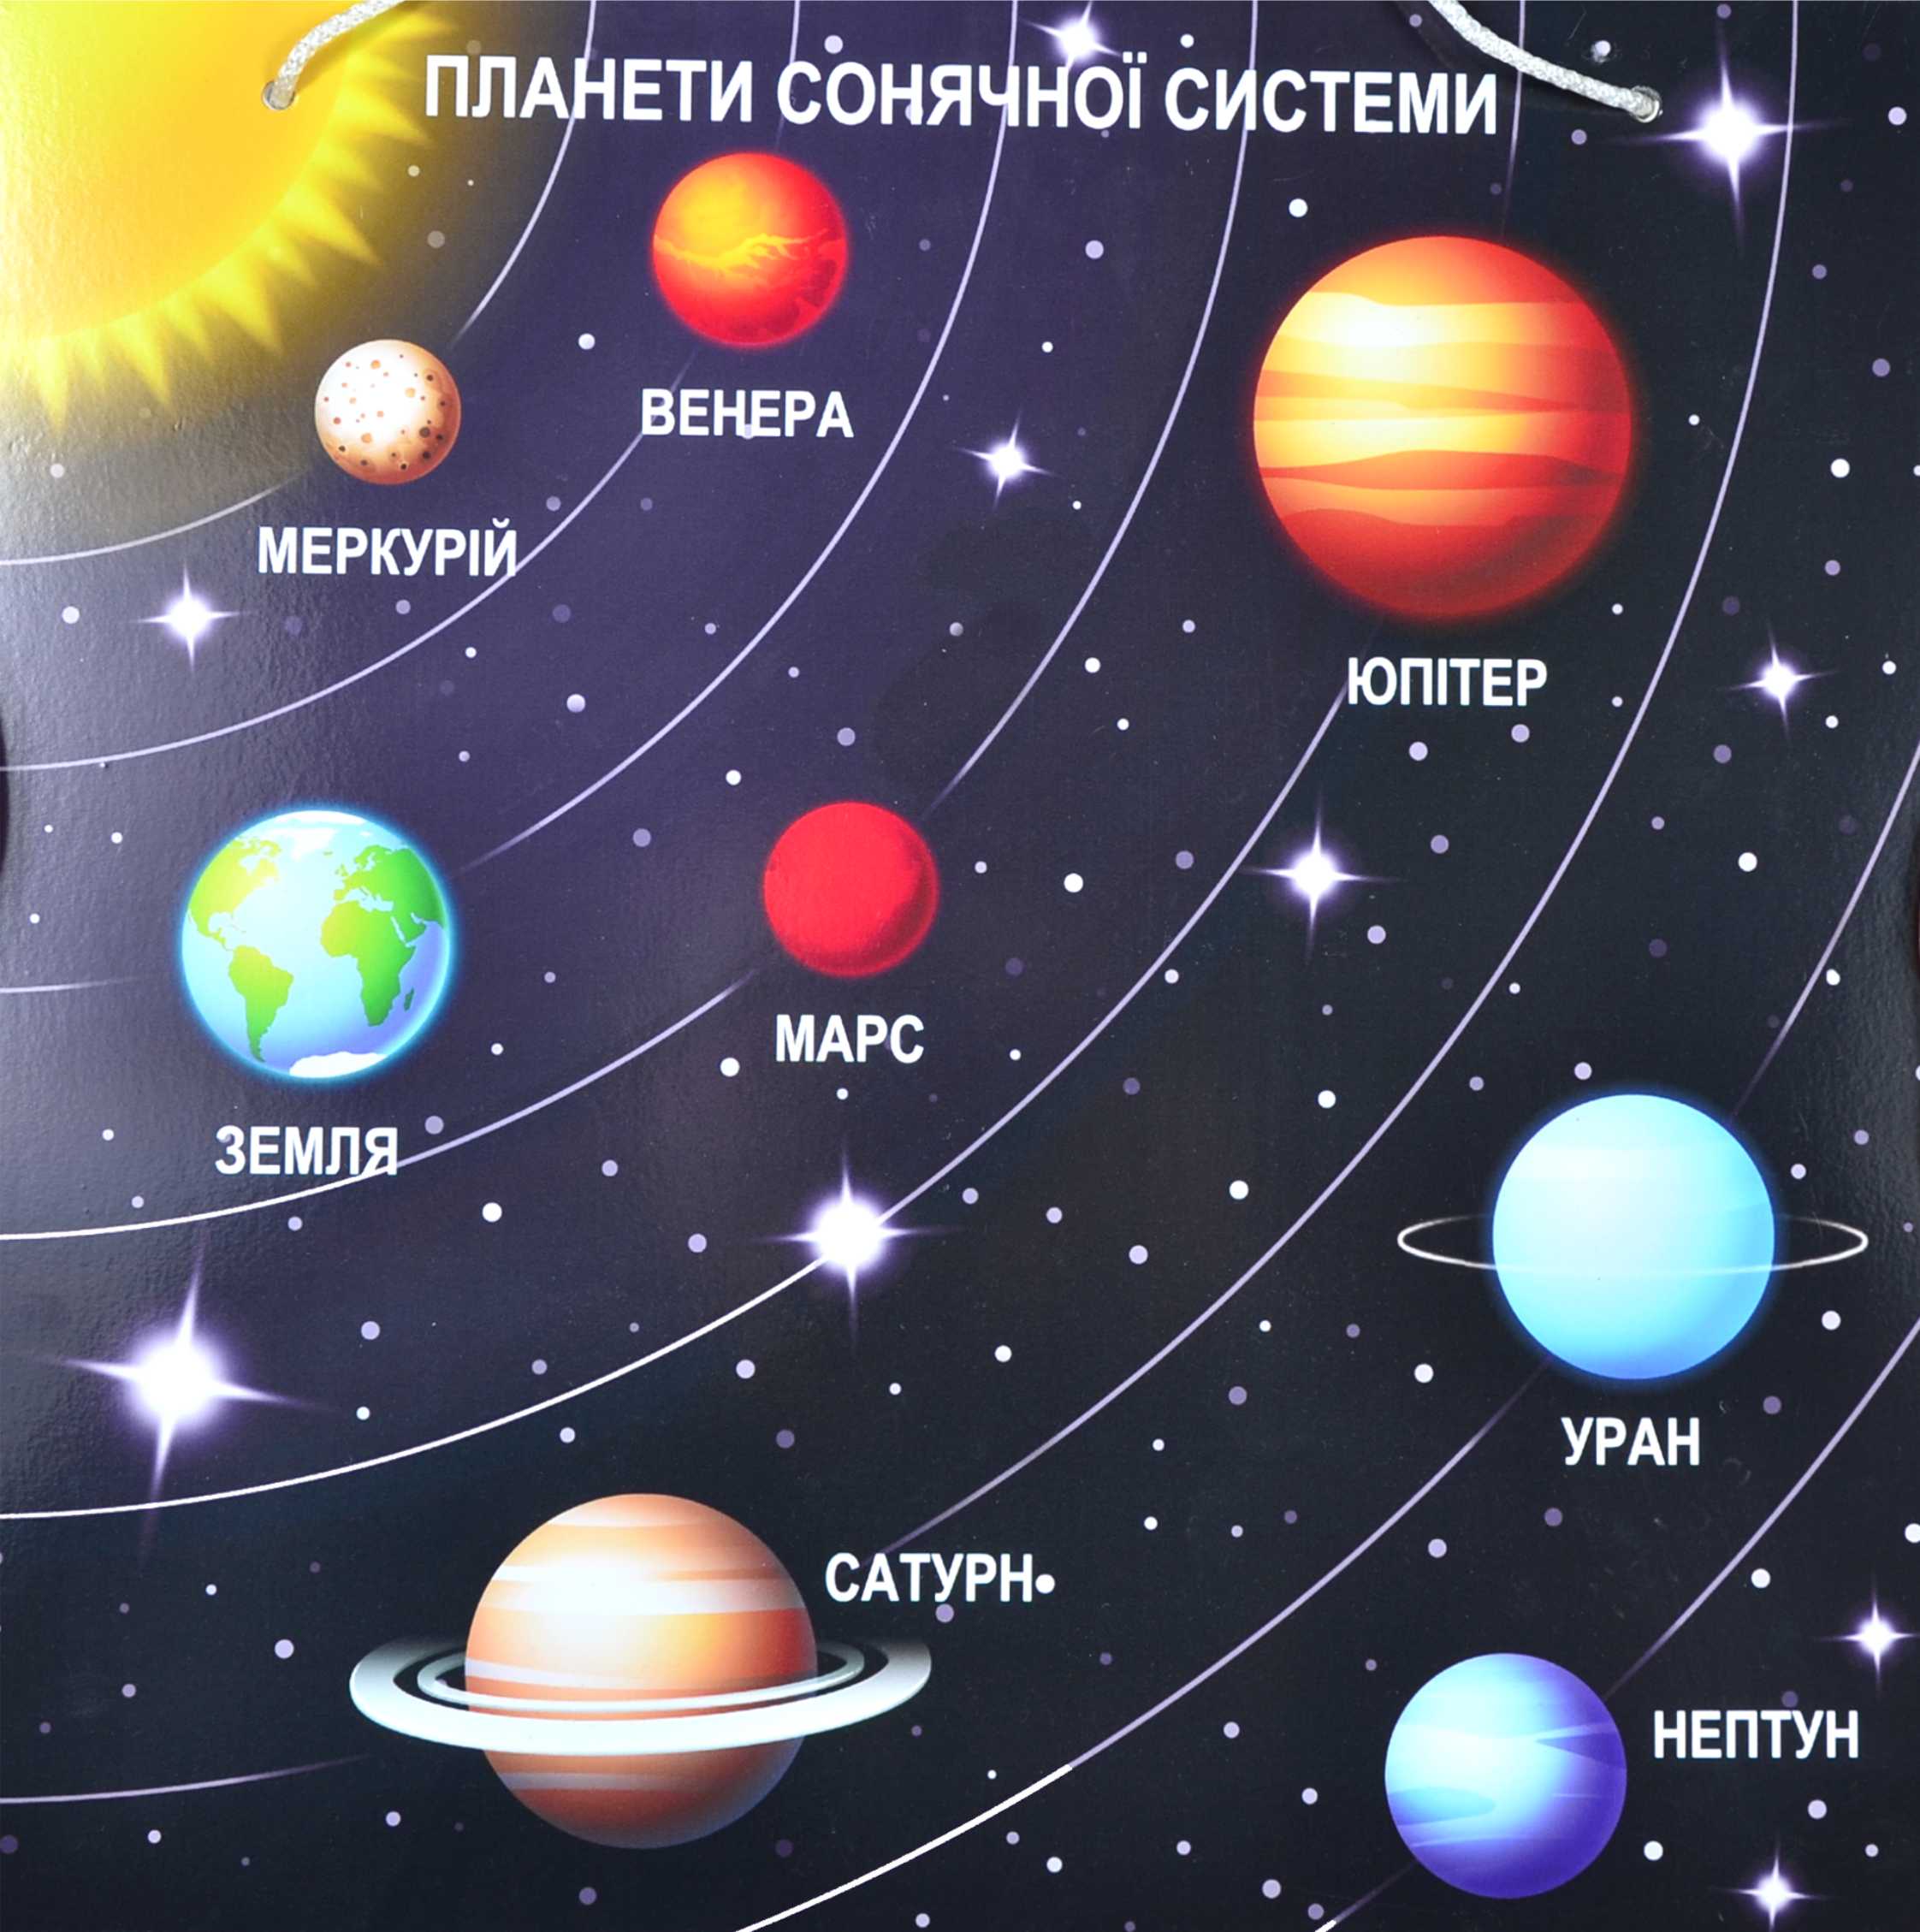 Какие бывают планеты в космосе. Солнечная система расположение плане. Солнечная система с названиями планет по порядку от солнца. Планеты солнечной системы по порядку от солнца с названиями для детей. Расположение планет солнечной системы.